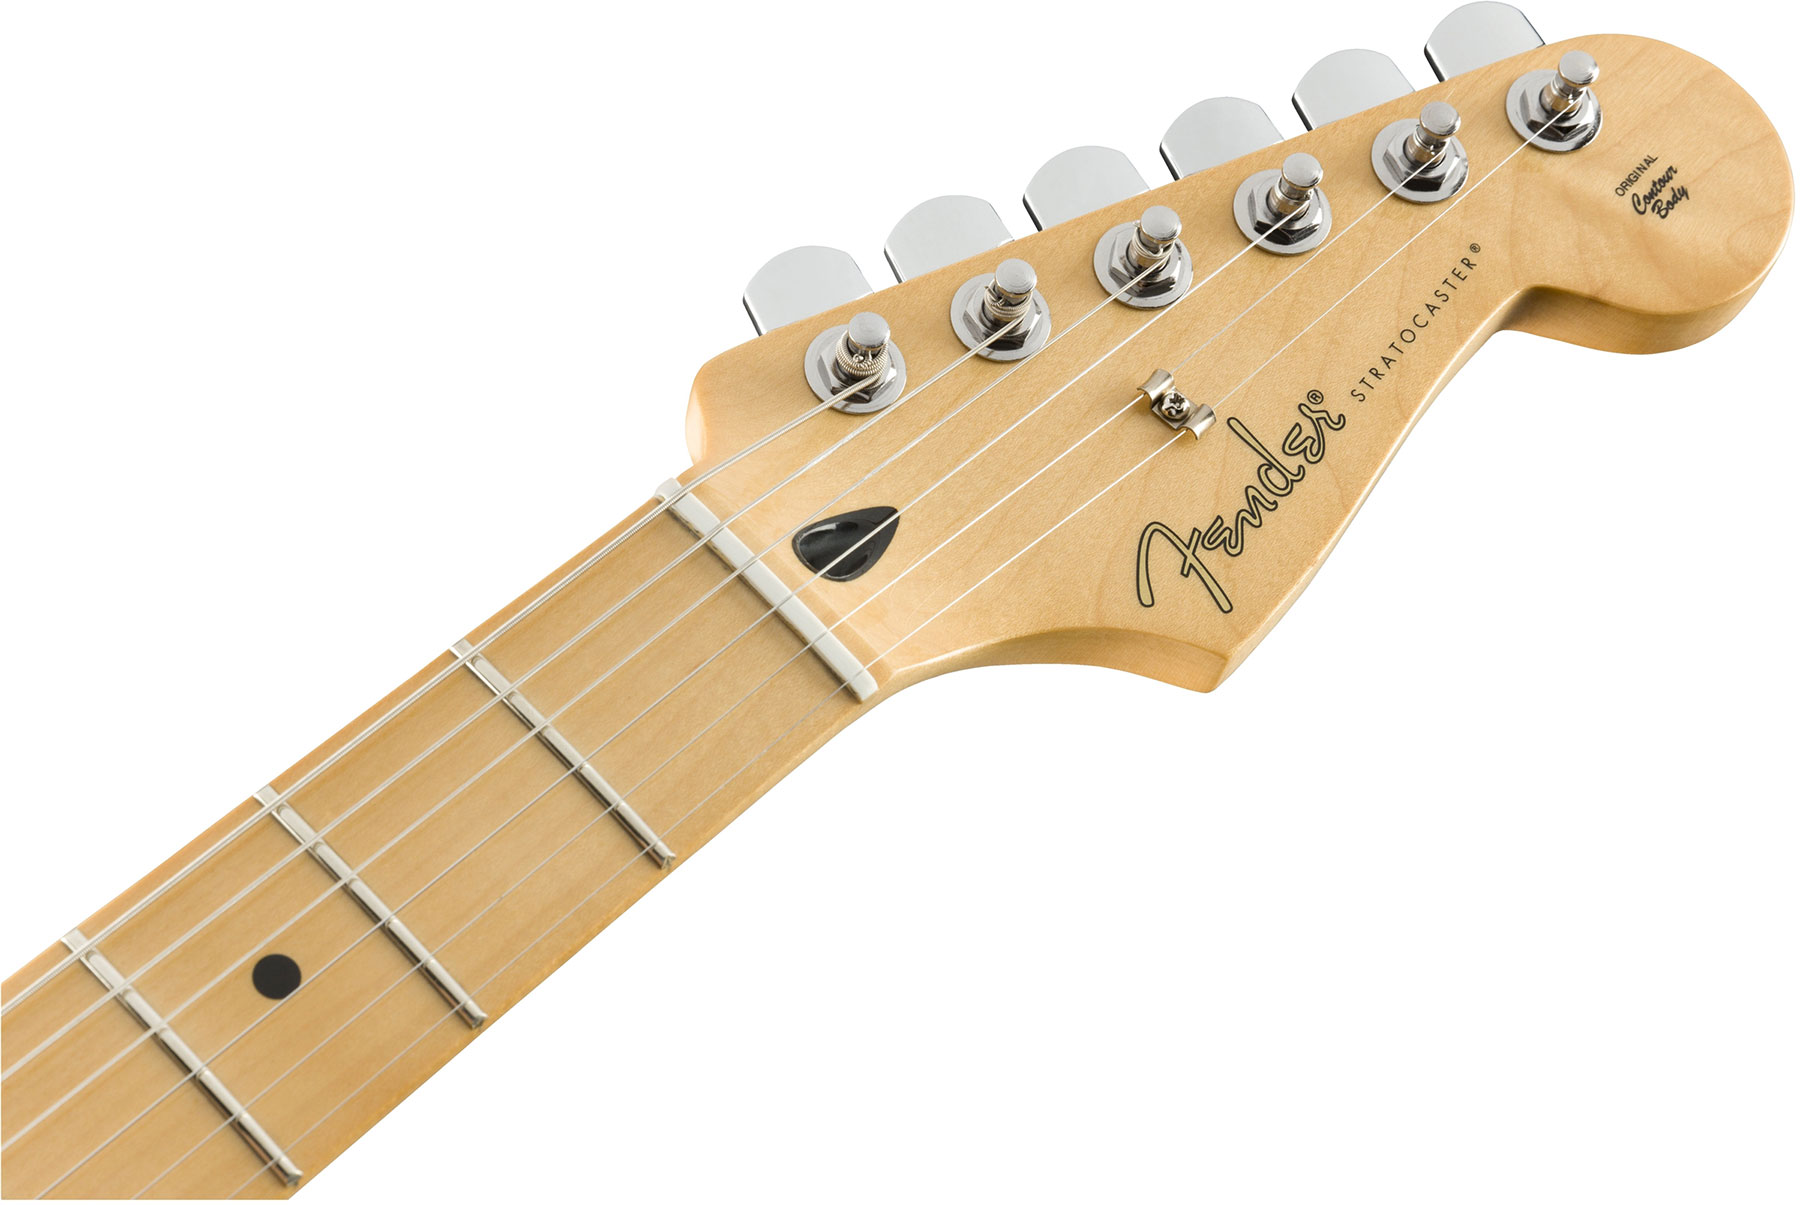 Fender Strat Player Plus Top Mex 3s Mn - Aged Cherry Burst - Elektrische gitaar in Str-vorm - Variation 2